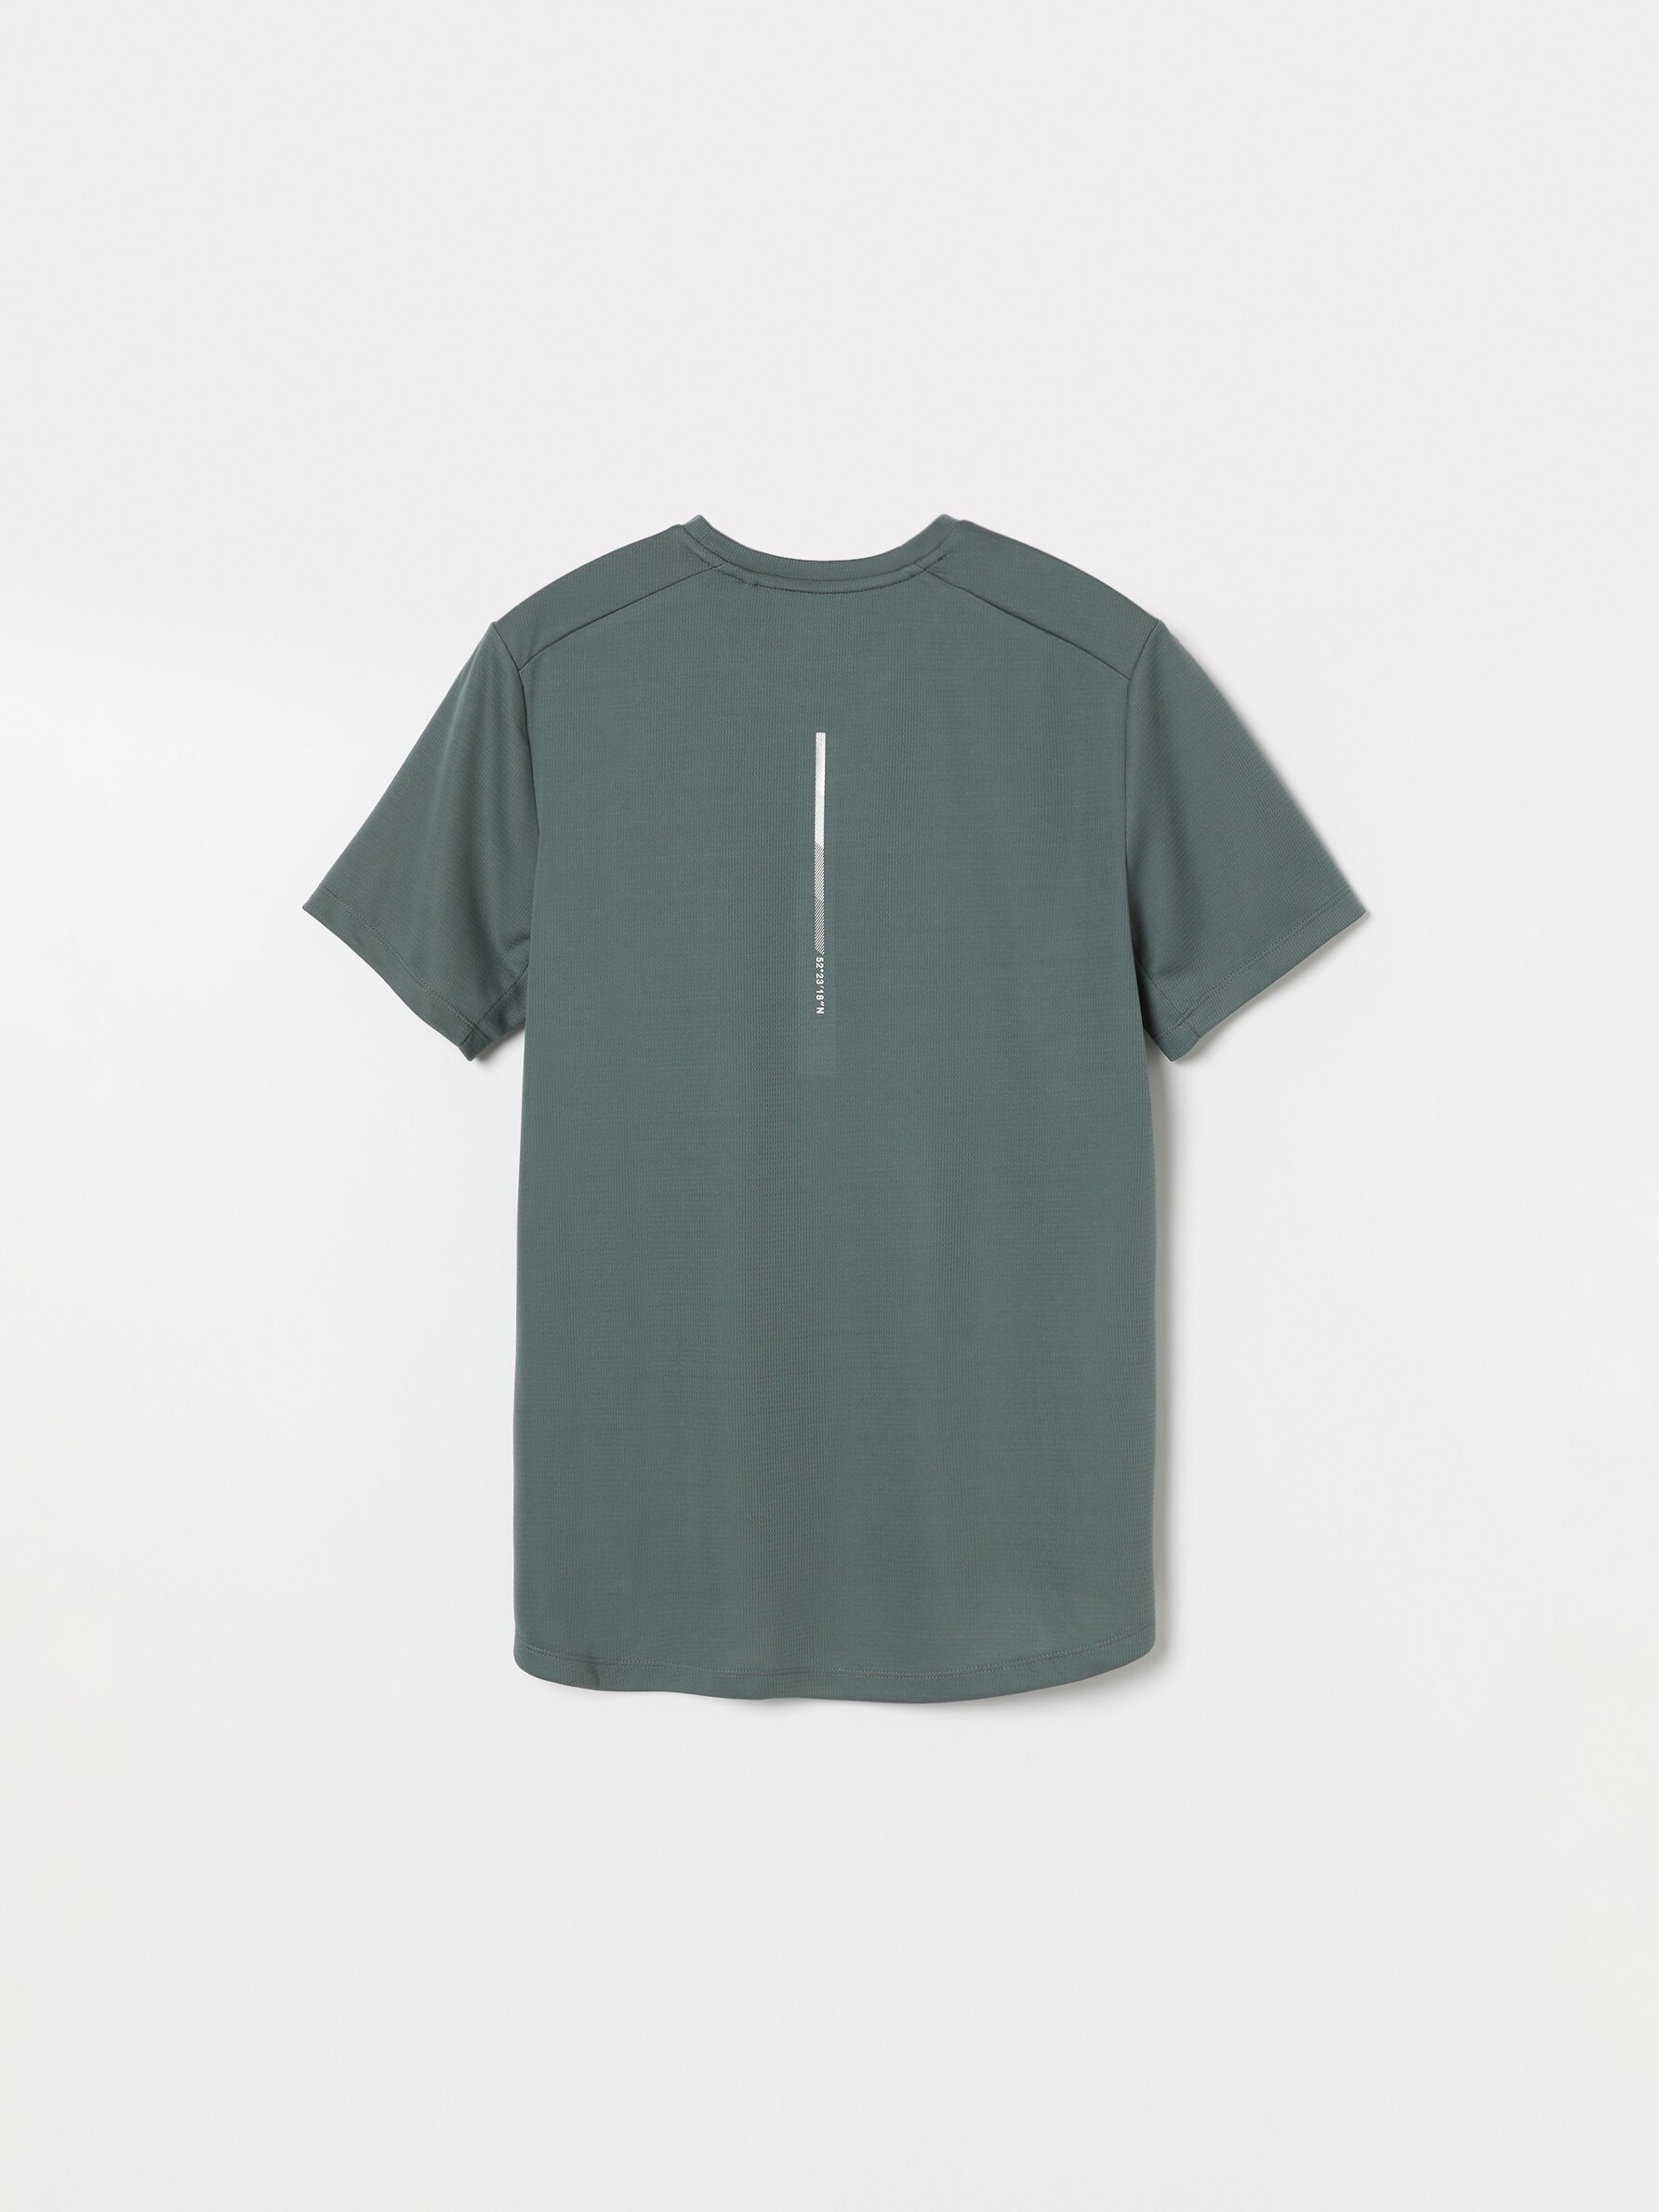 Sports T-shirt - Short Sleeve T-shirts - T-shirts - CLOTHING - Man 